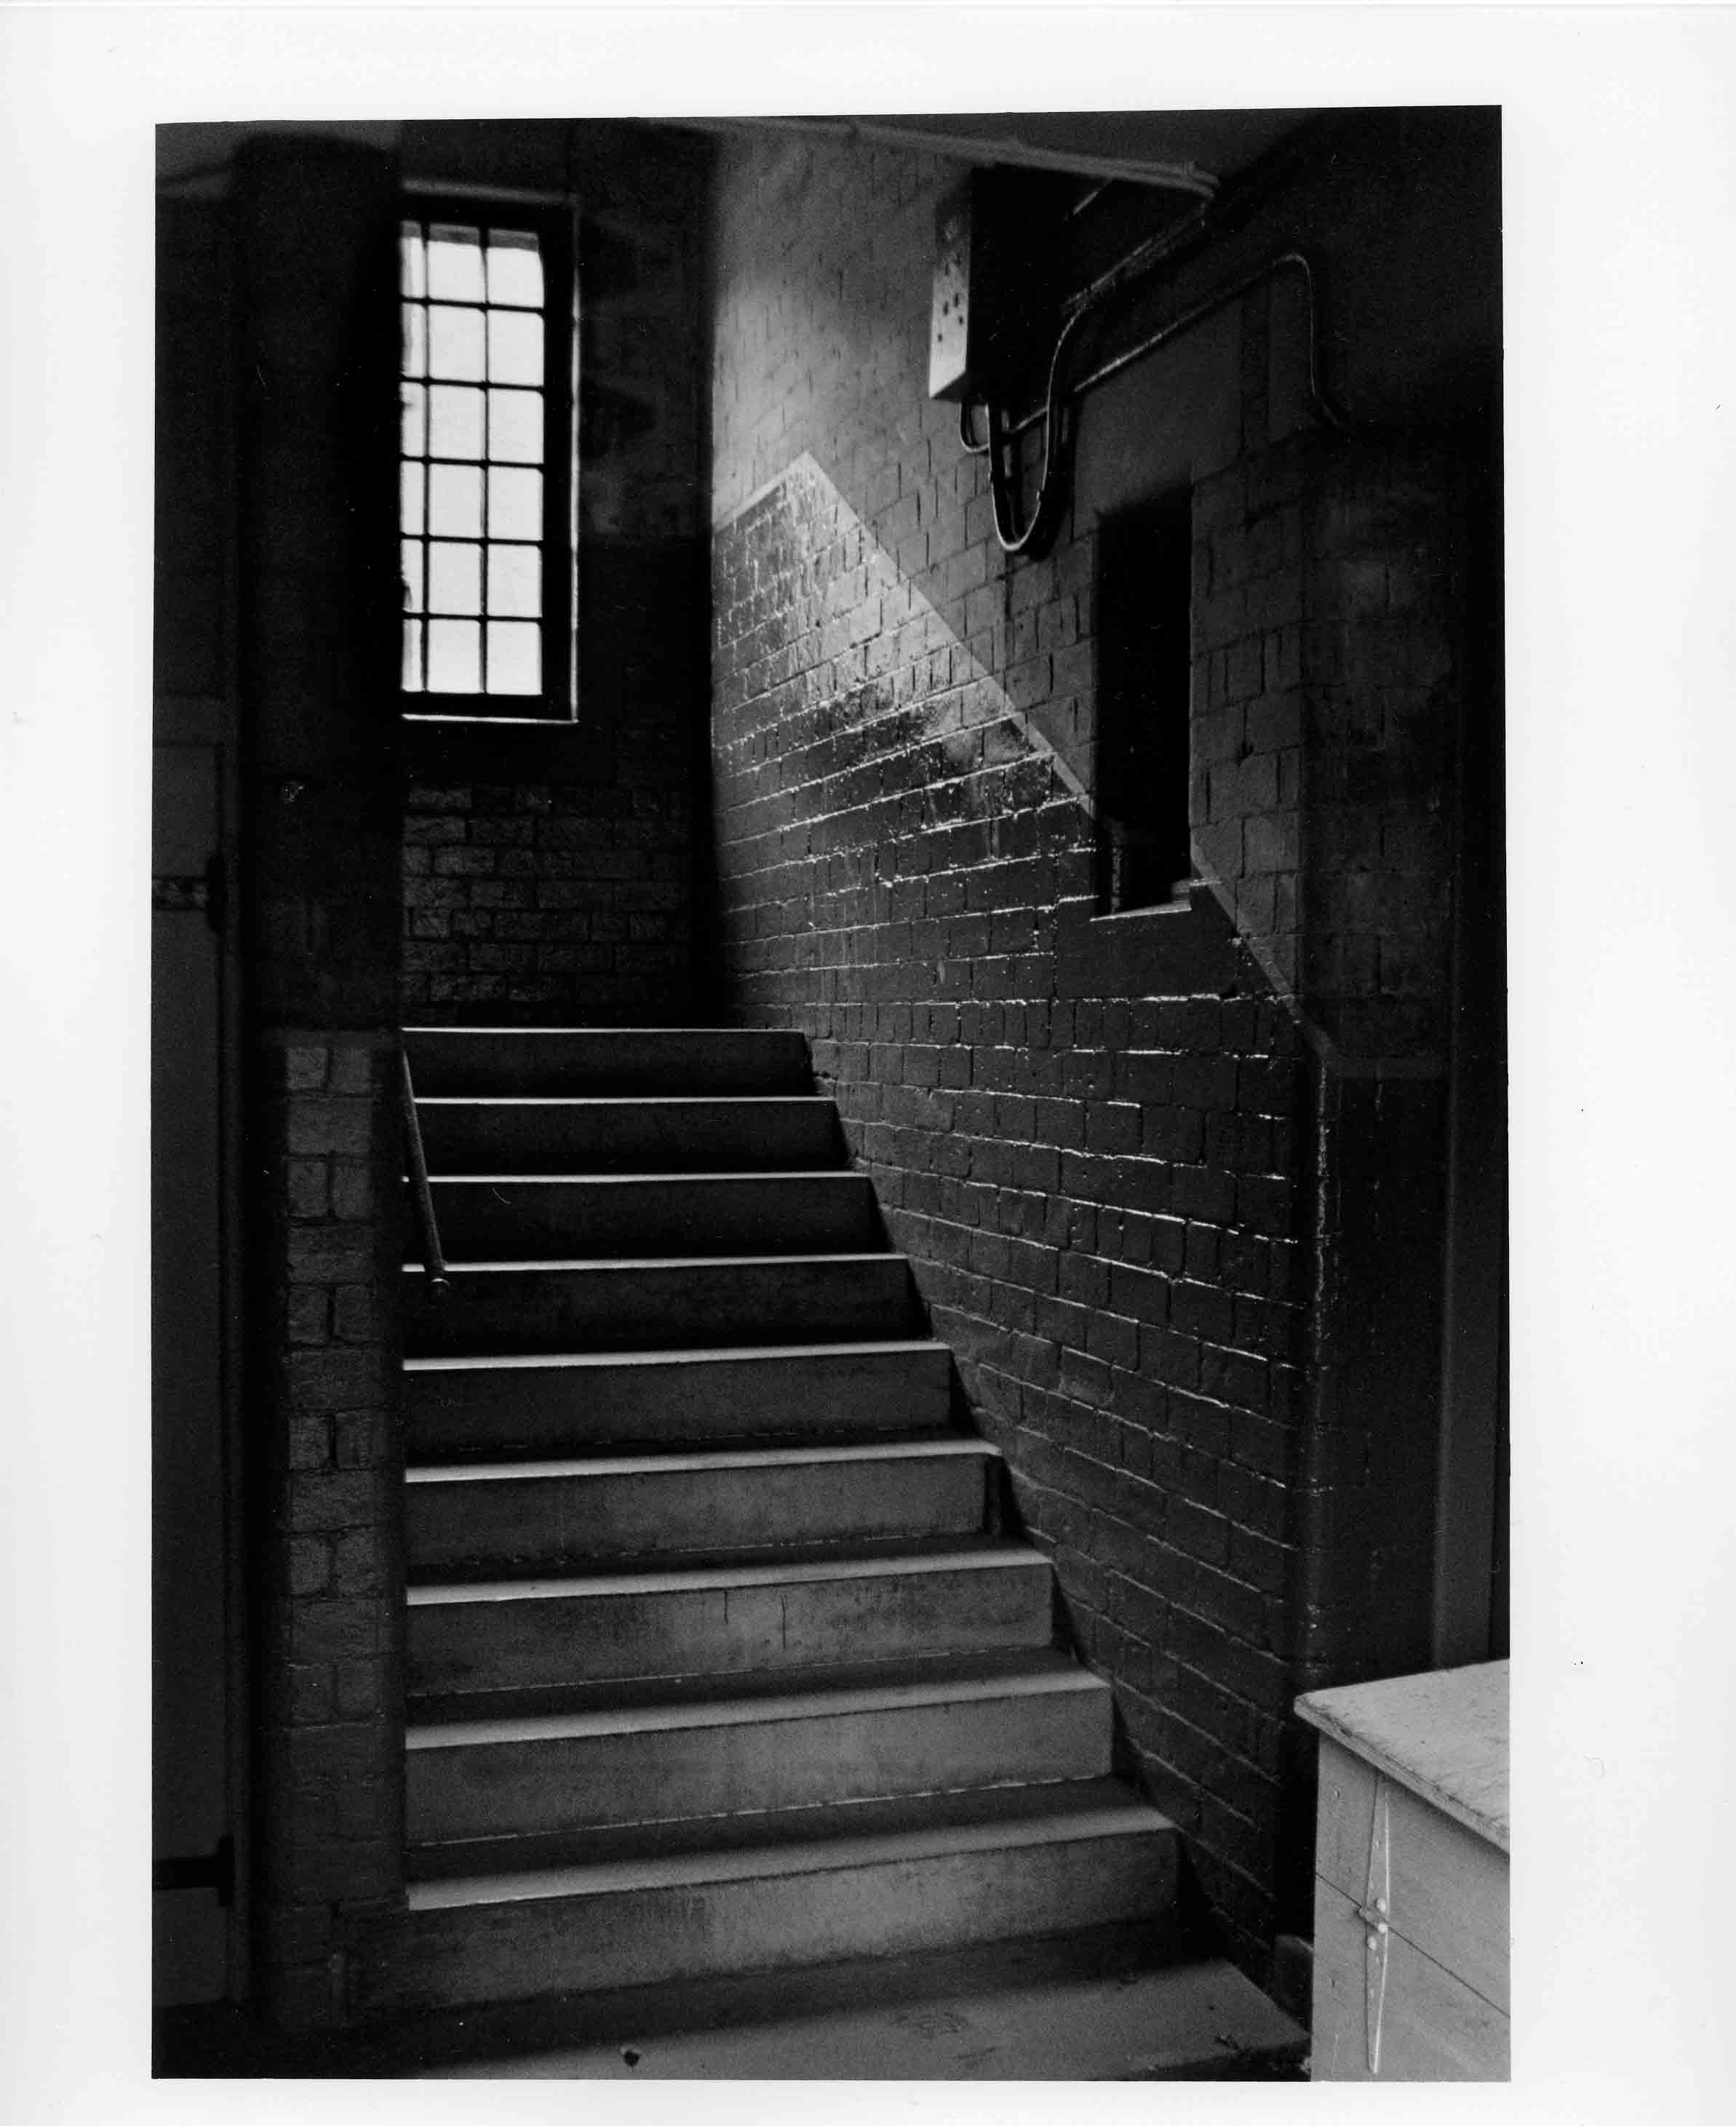 Staircase in dean village